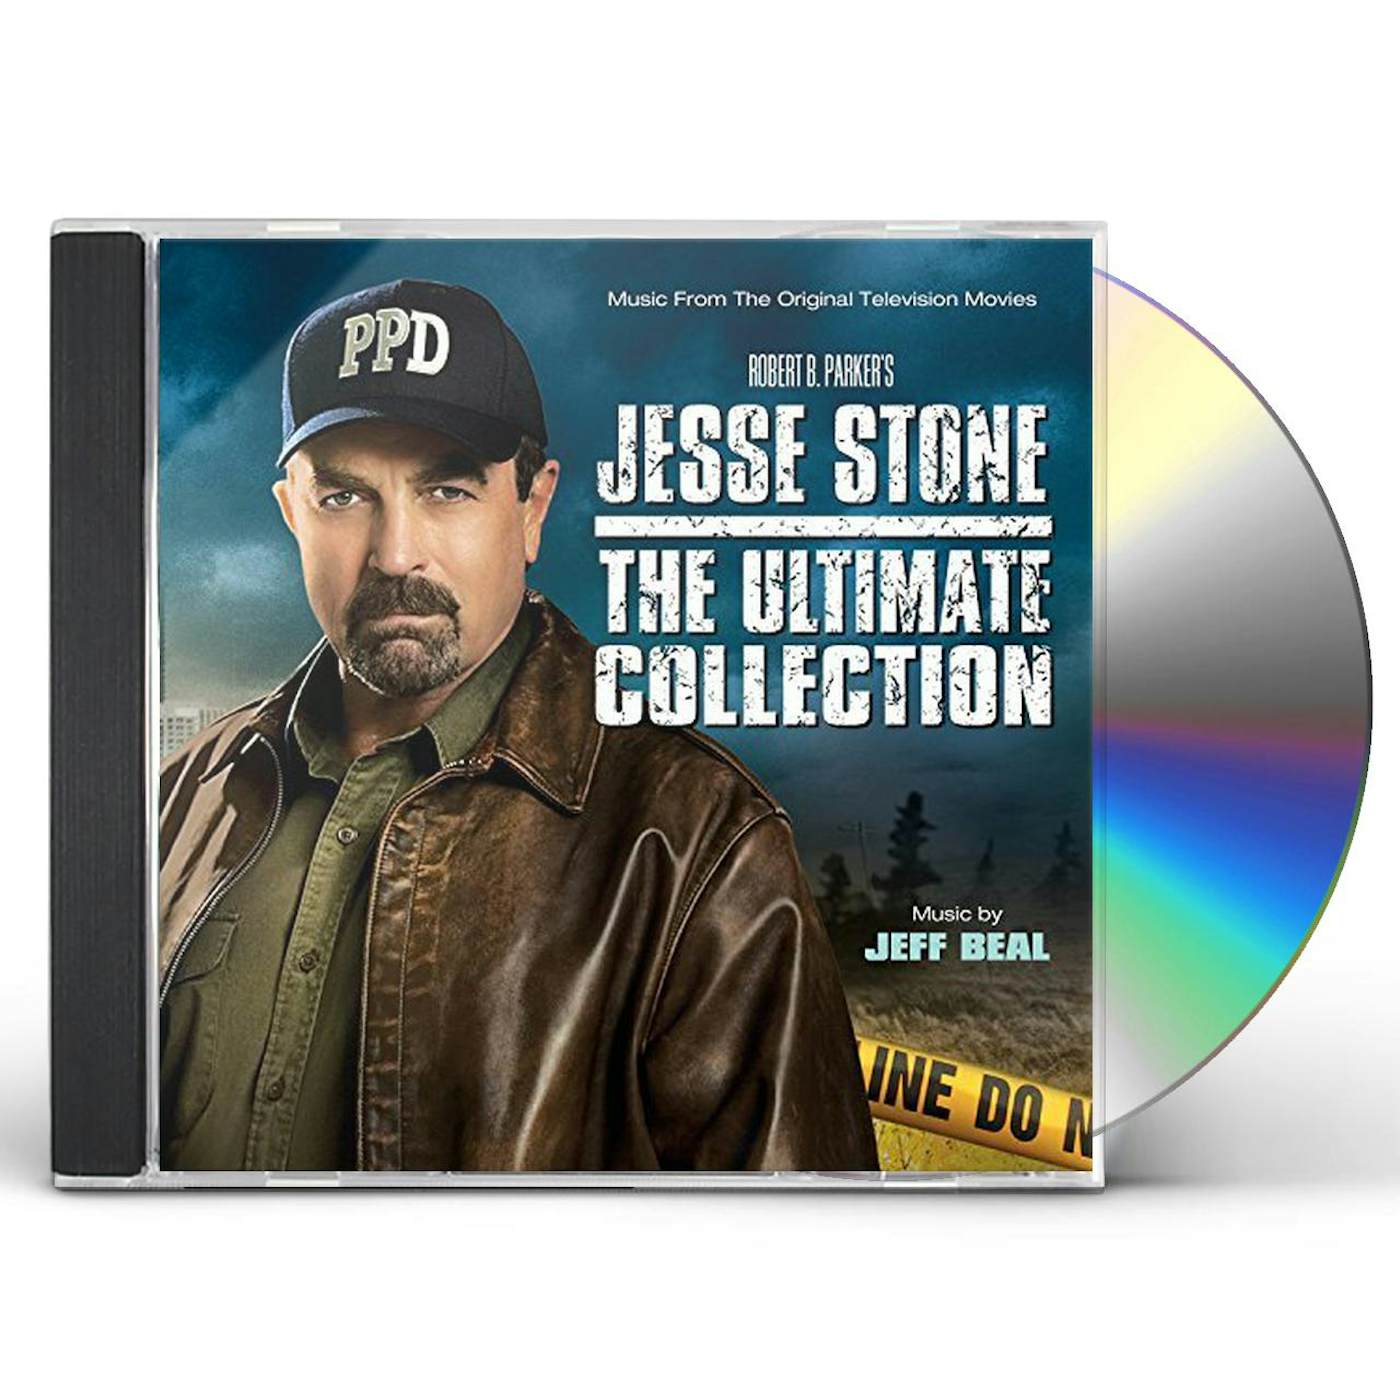  Jesse Stone Movies